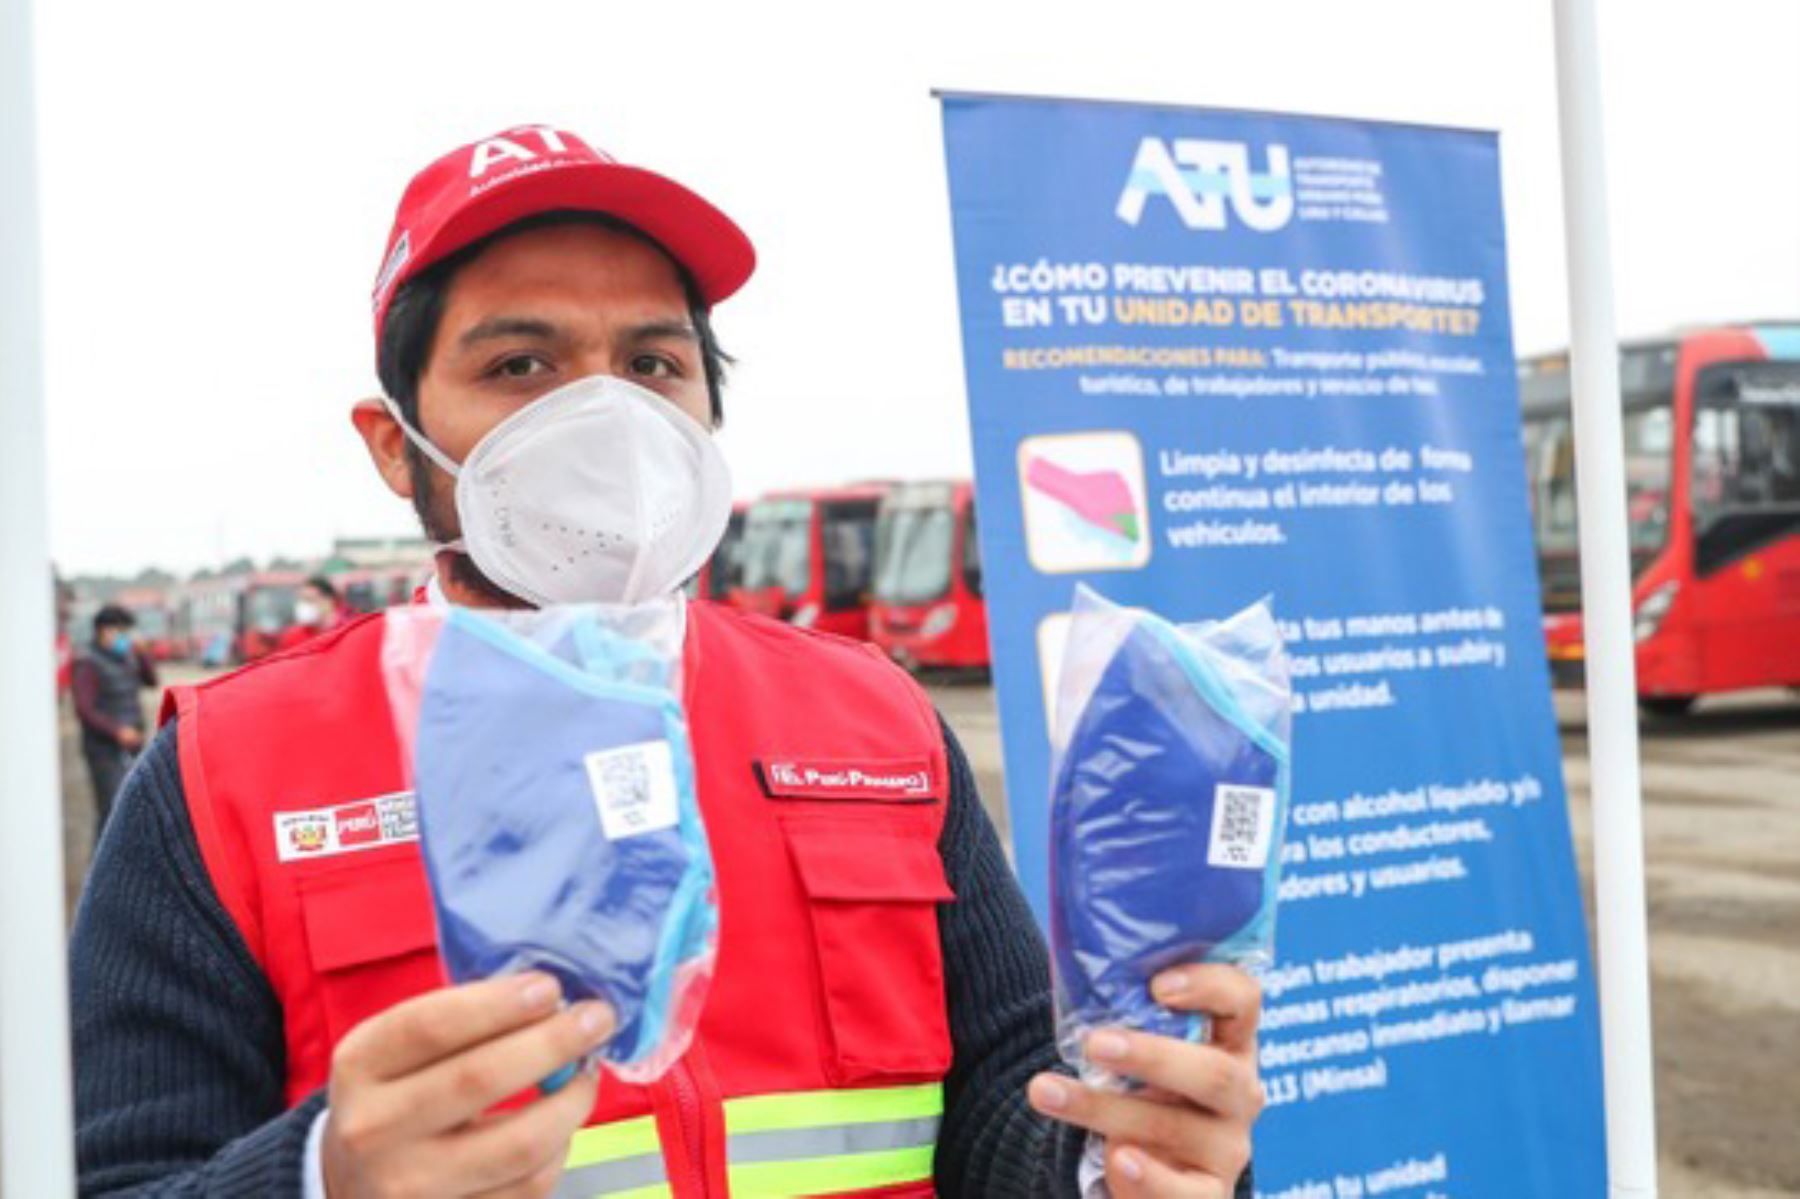 La campaña de distribución de mascarillas a taxistas se extenderá hasta el 30 de junio, informó la ATU. Foto: ANDINA/Difusión